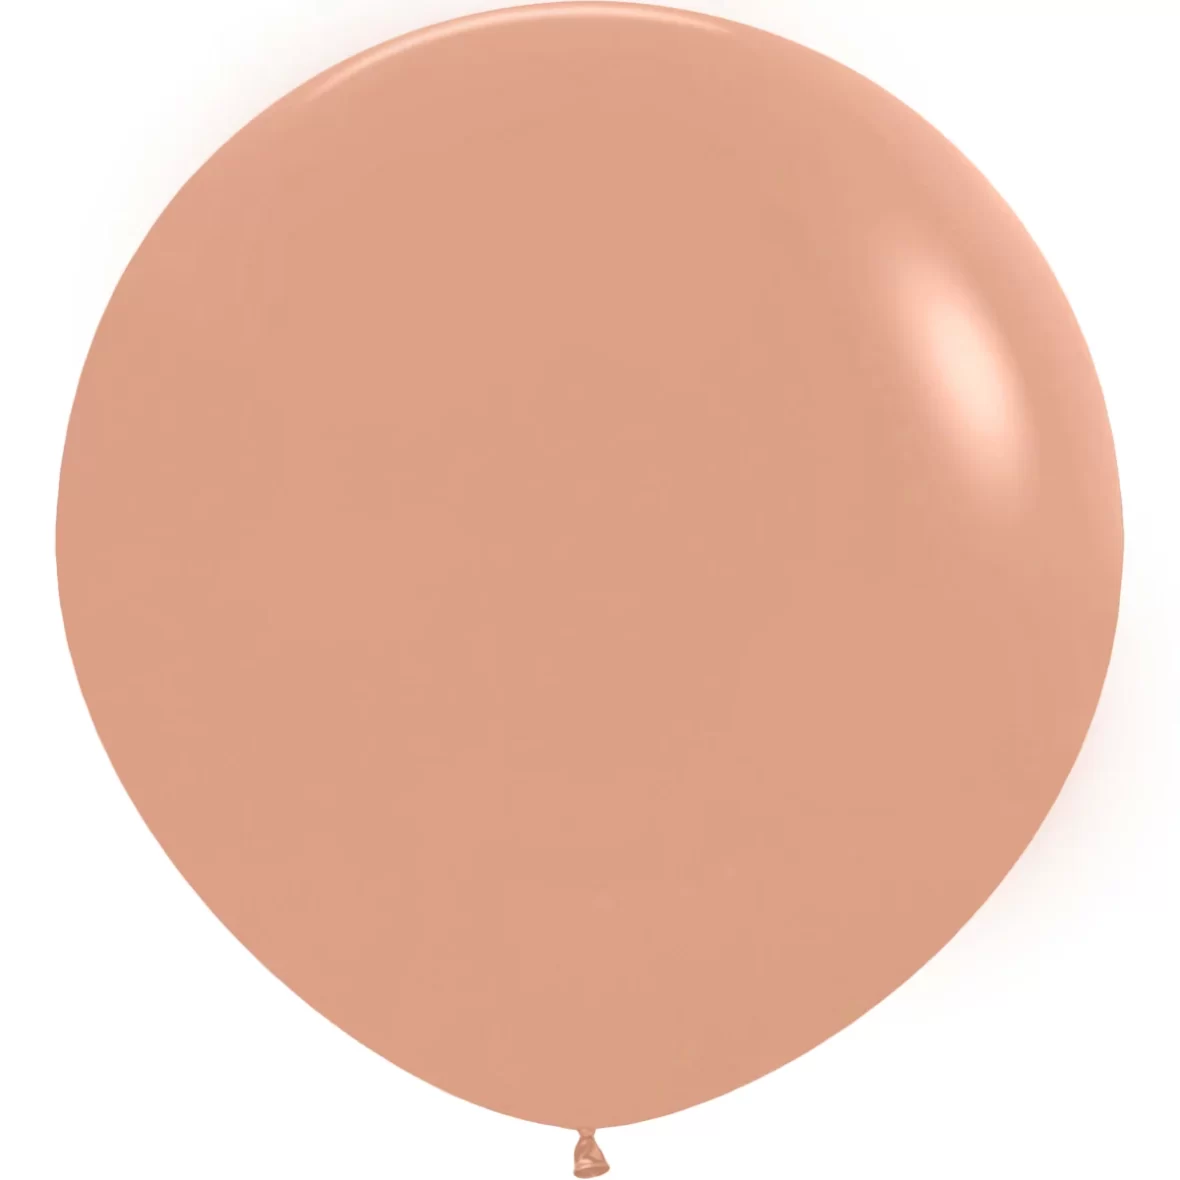 981-baloane-jumbo-ovale-90-cm-1